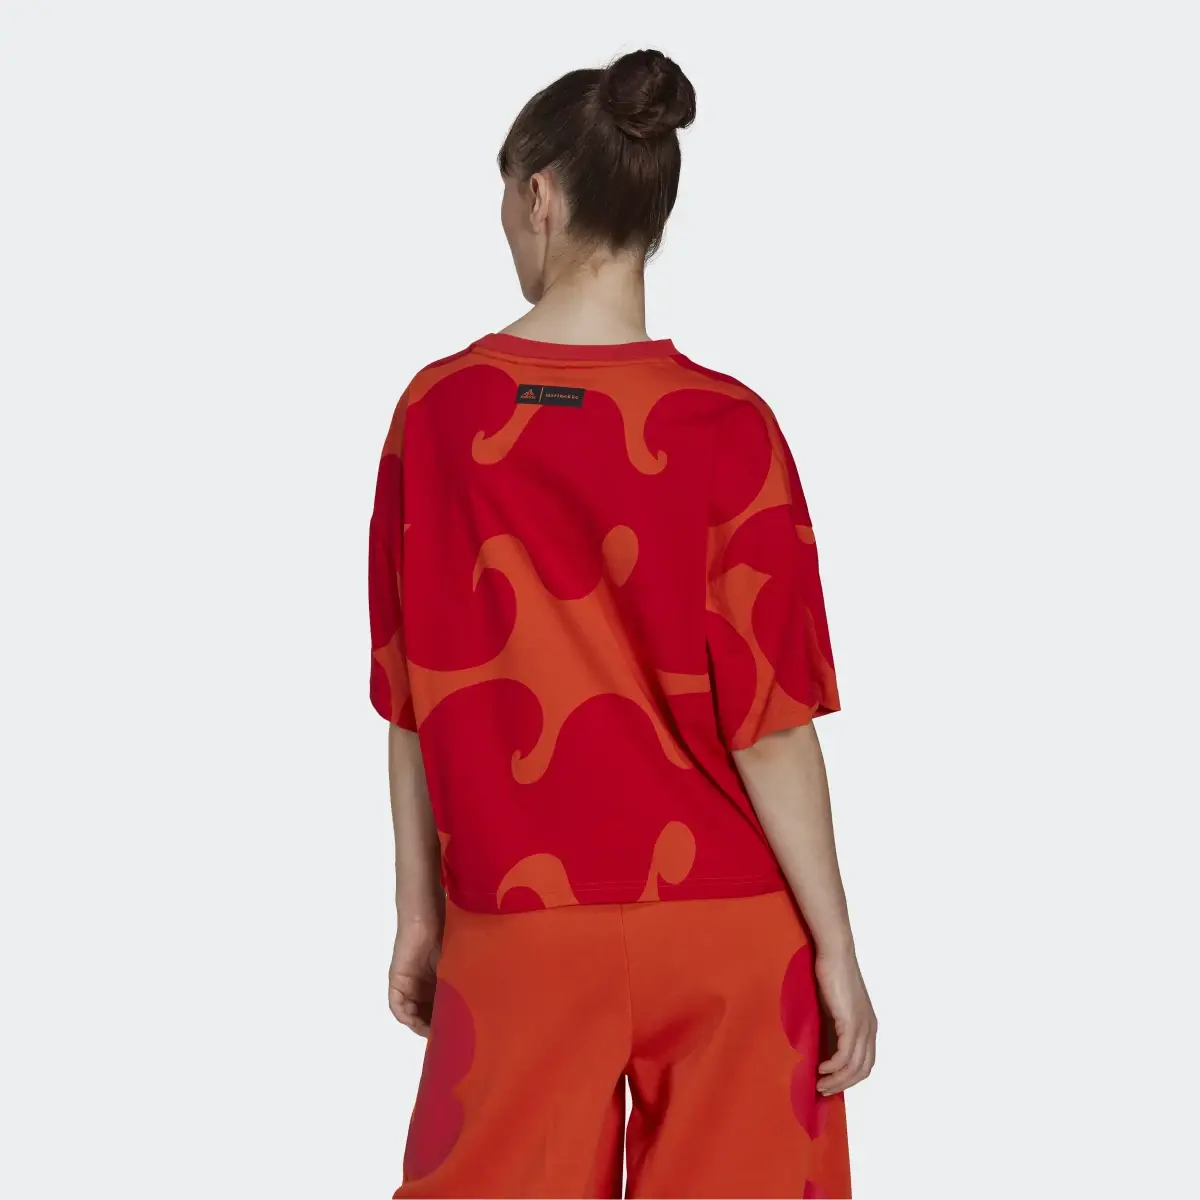 Adidas T-shirt Marimekko. 3